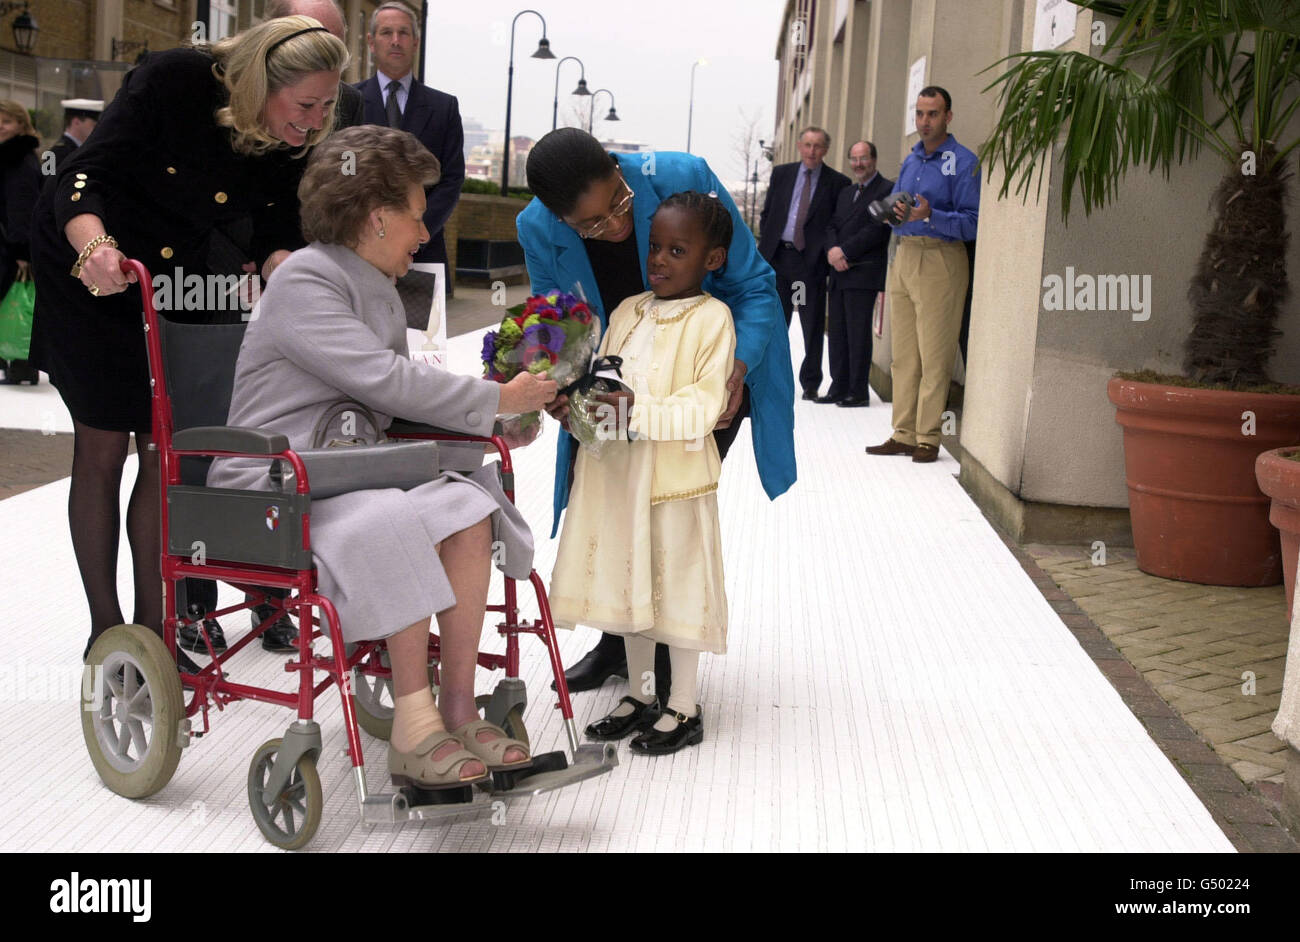 La princesse Margaret a fait une rare apparition publique lors d'une visite  au Chelsea Harbour Design Centre, à Londres, où elle a passé une partie de  sa visite en fauteuil roulant. *